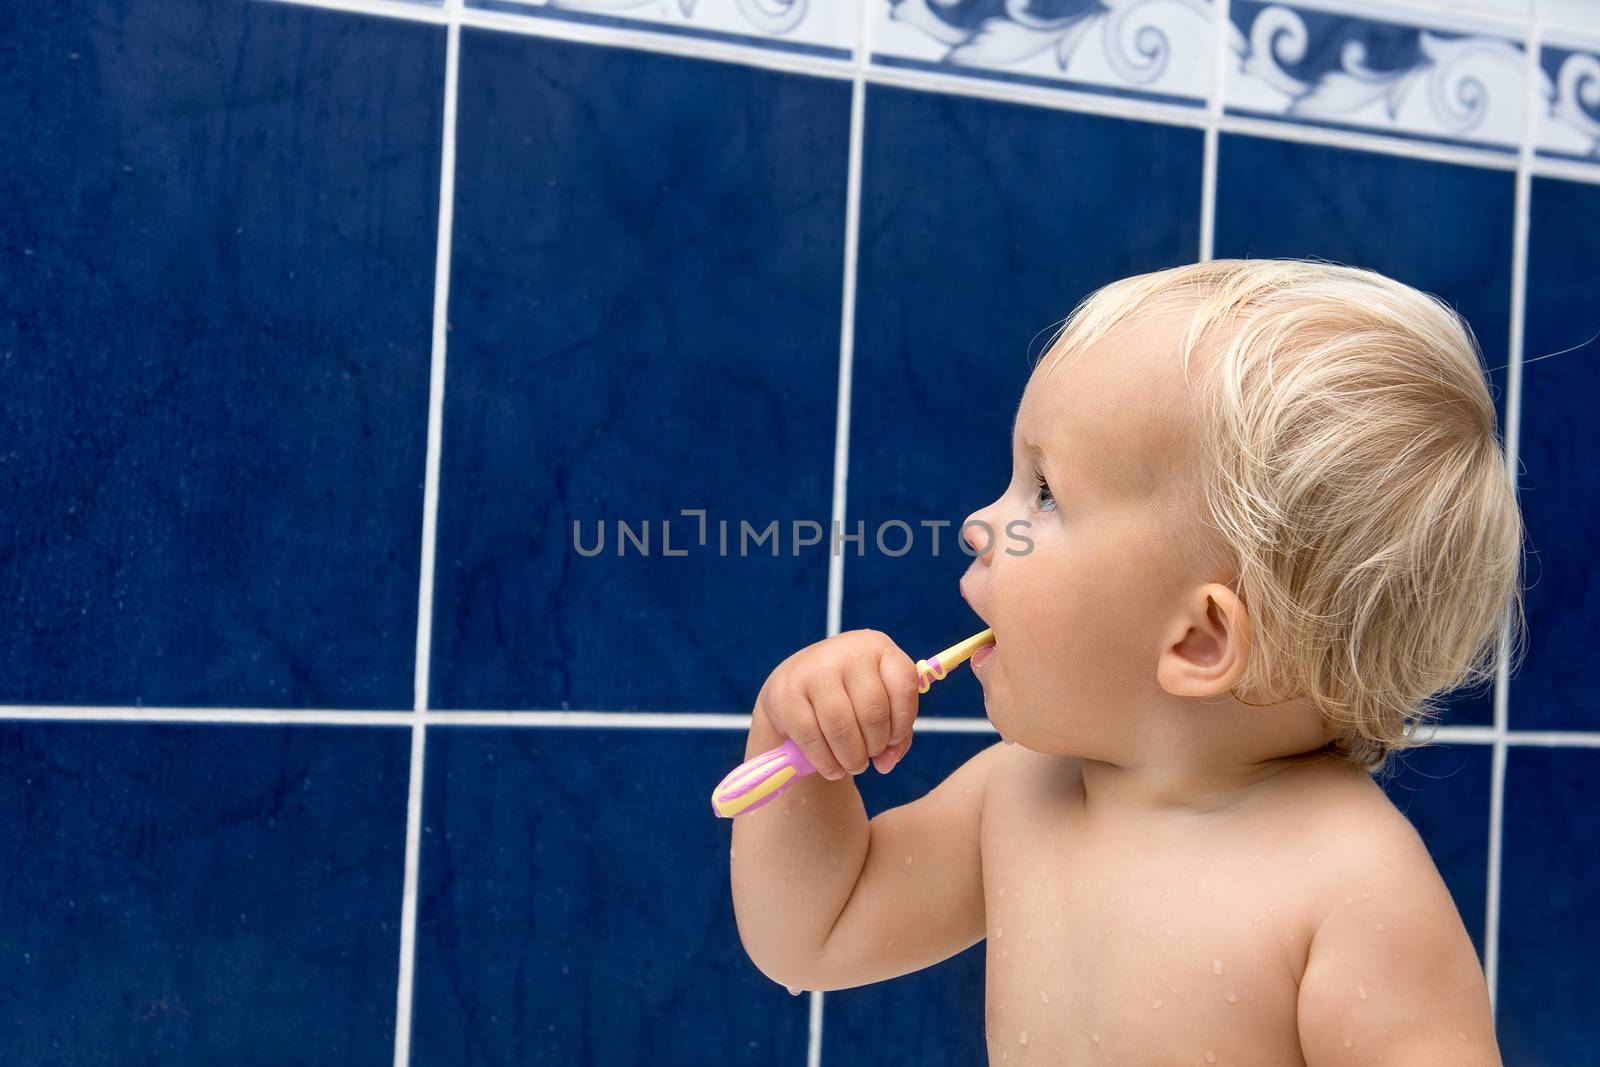 Little girl is brushing teeth in bathroom. Blue tiles behind. Looking sideways